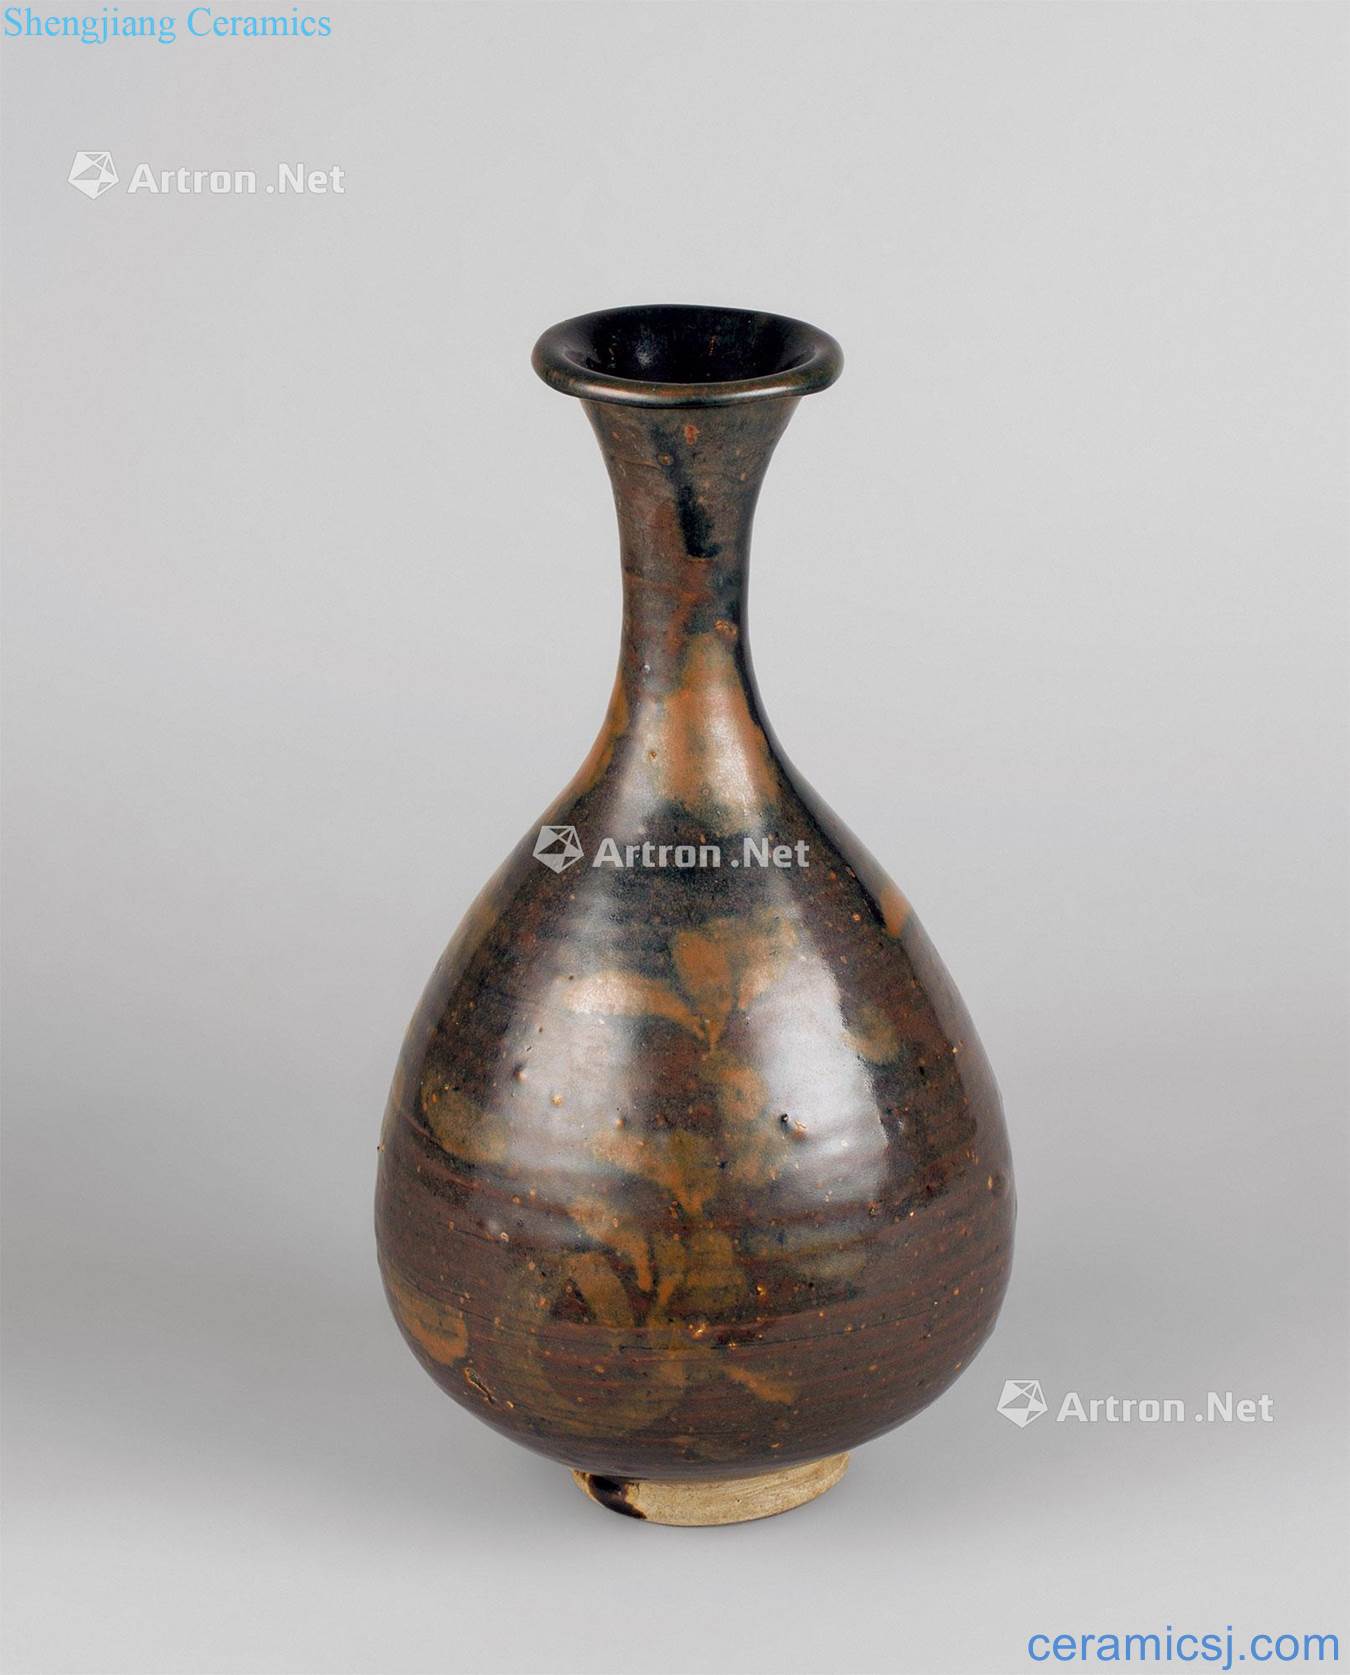 The song dynasty (960 ~ 1279) flower grain iron rust stain okho spring bottle